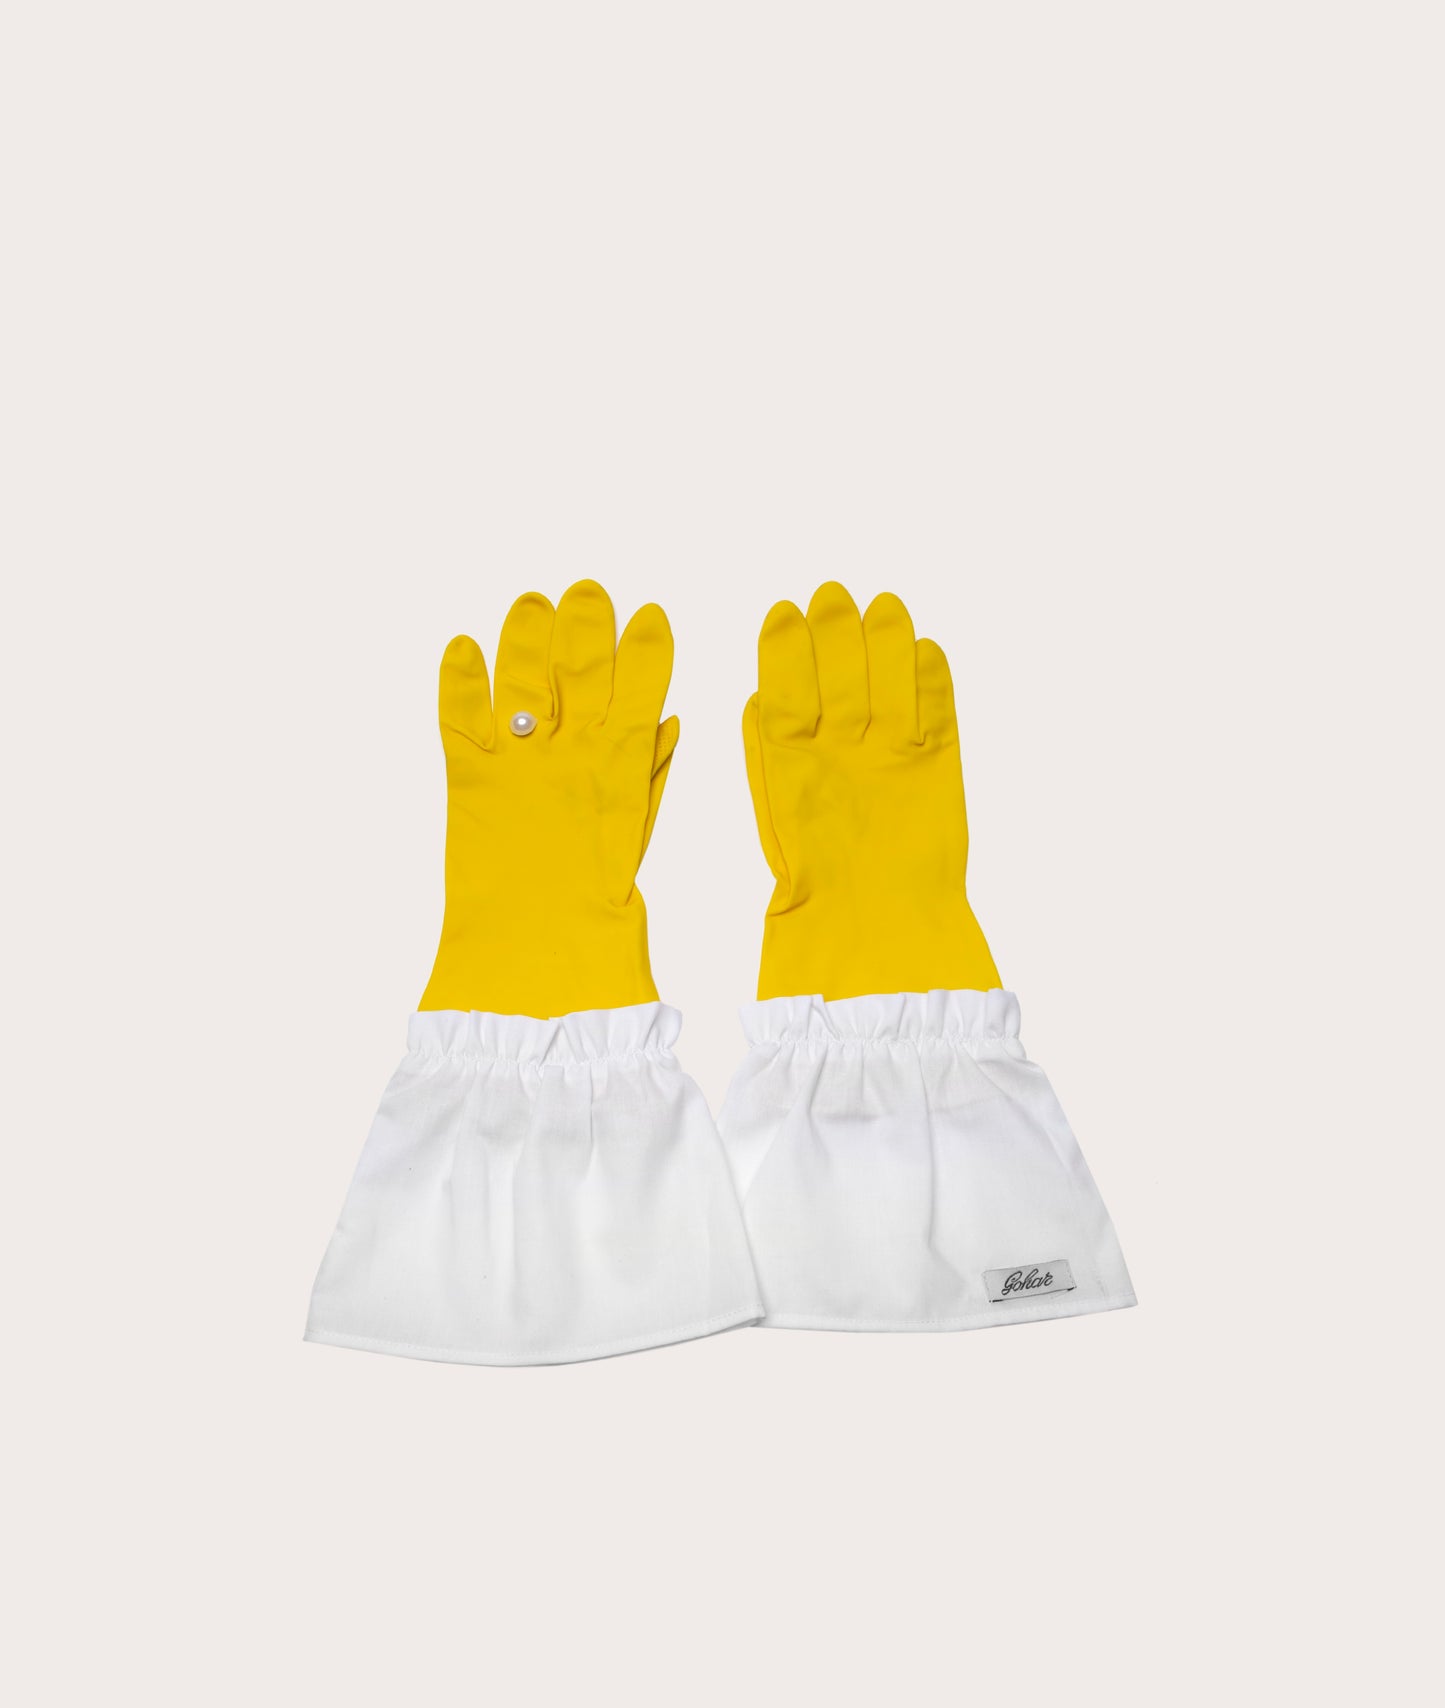 Host Gloves, Rubber